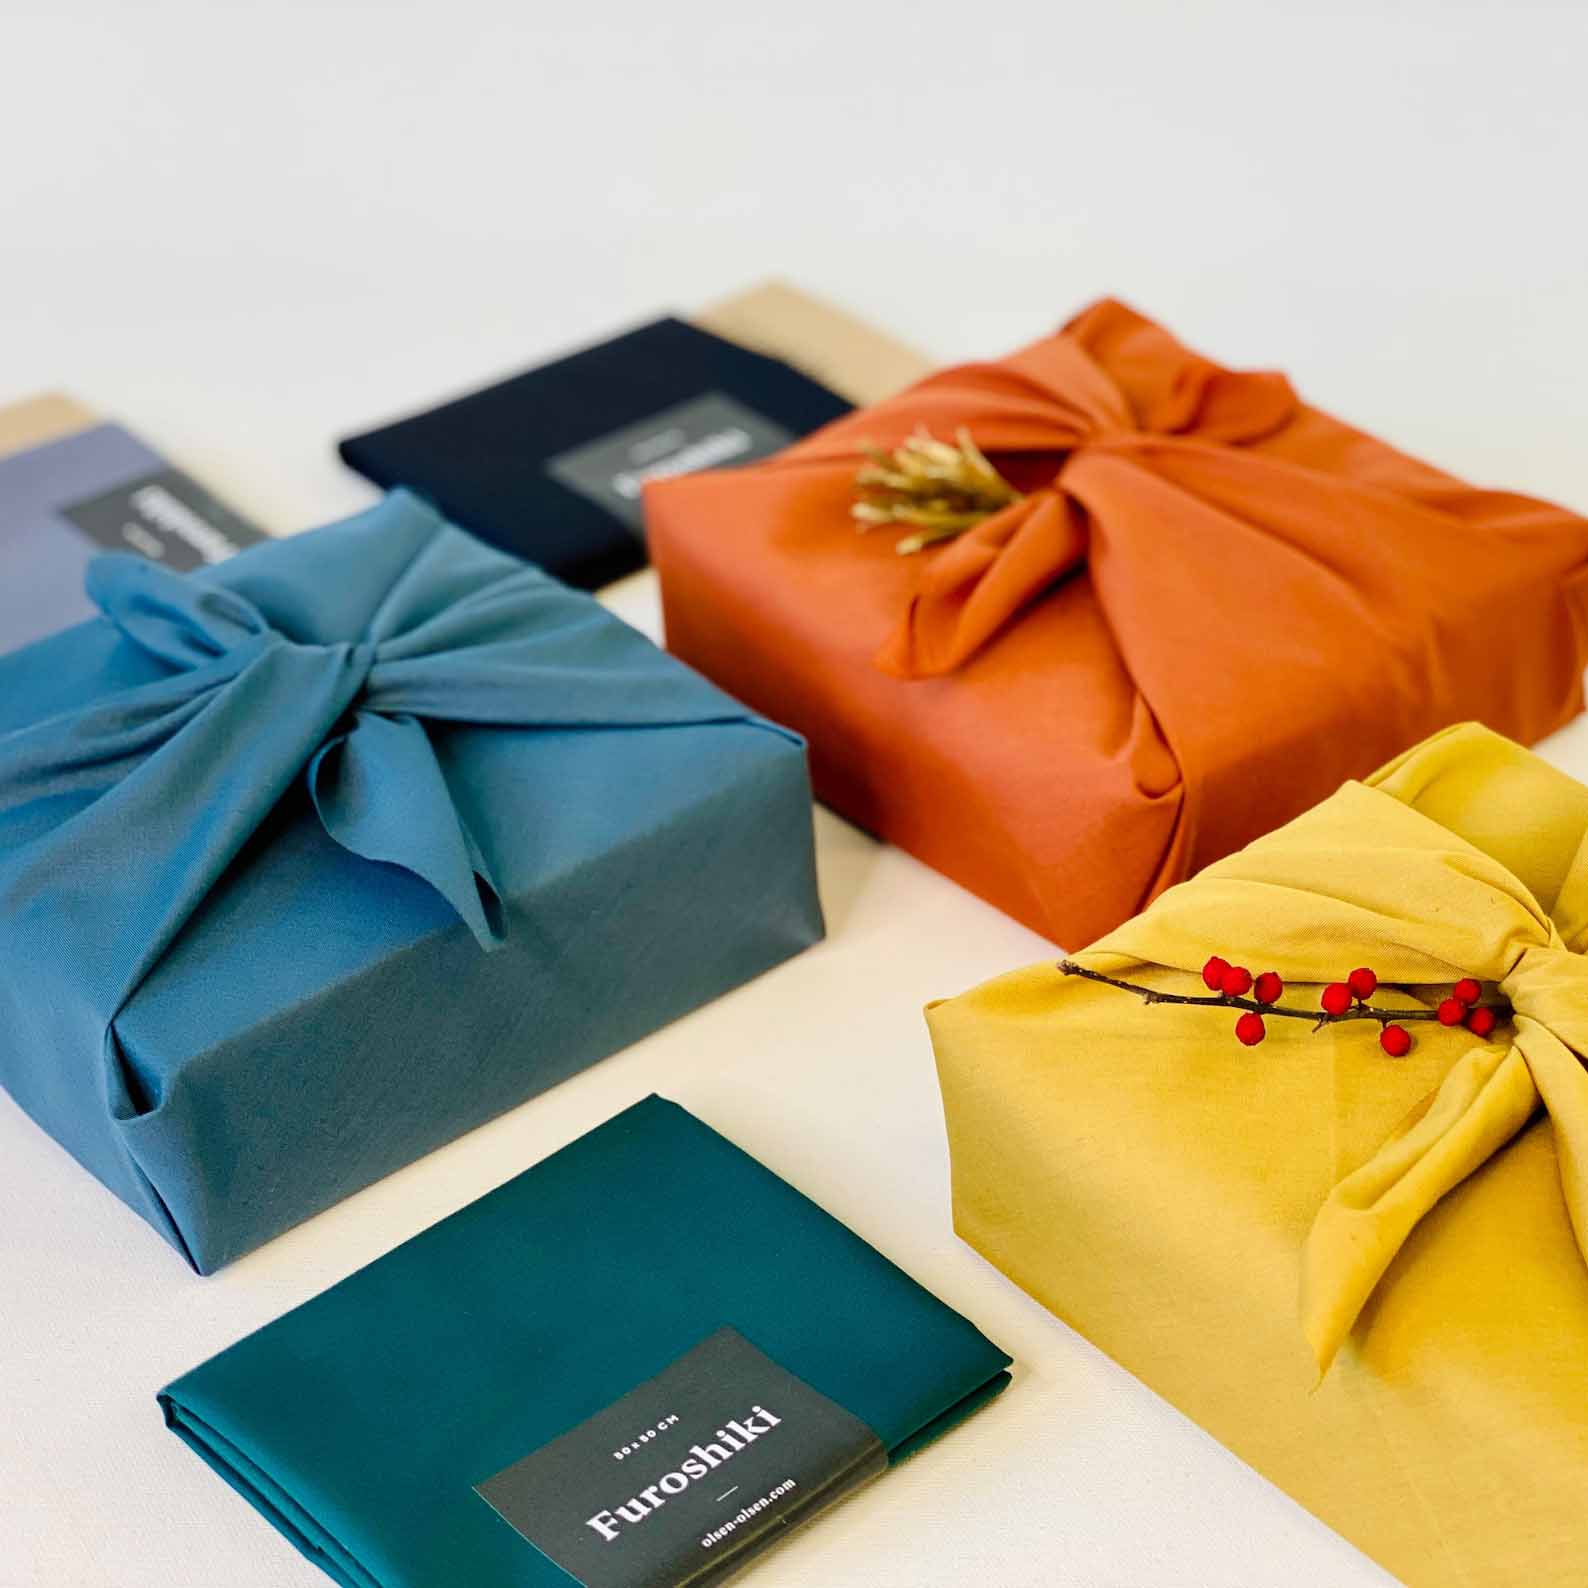 Furoshiki reusable gift wrapping cloth